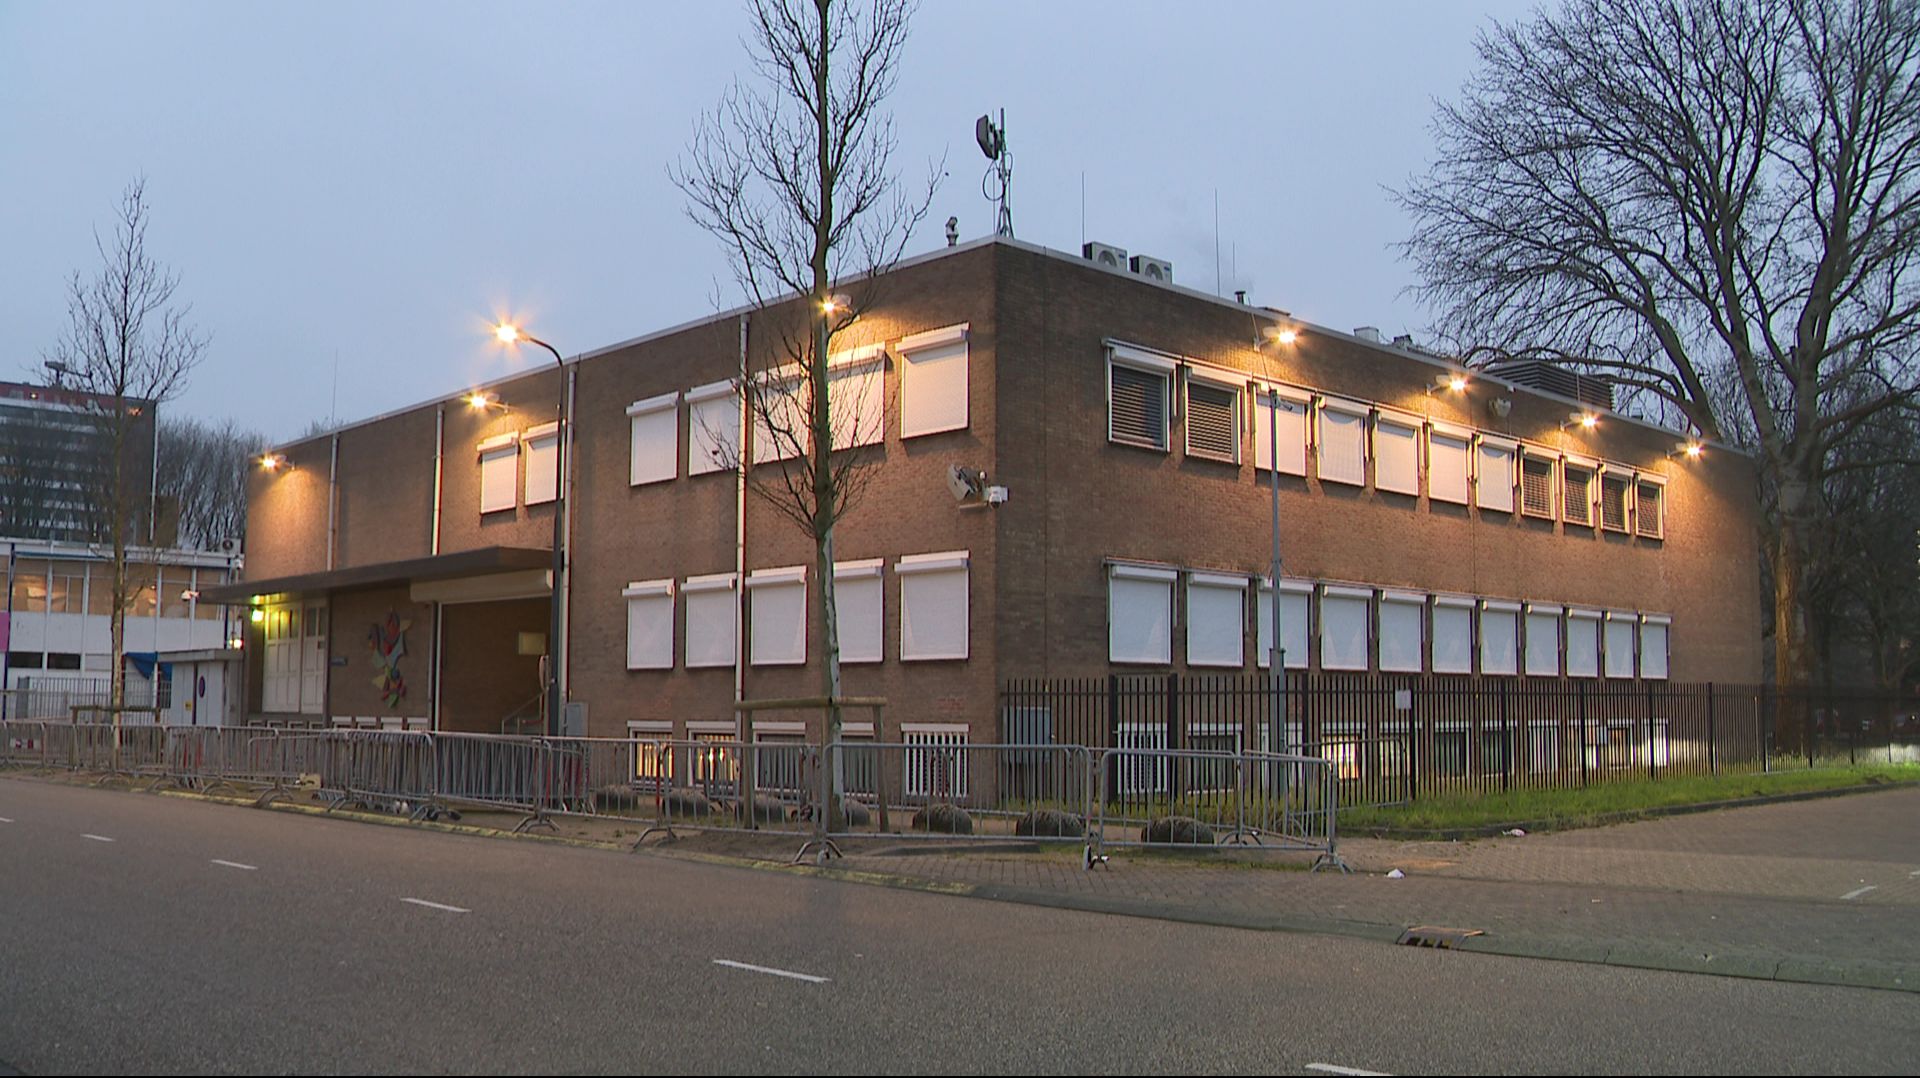 Le tribunal hypersécurisé d’Amsterdam, nommé le Bunker.